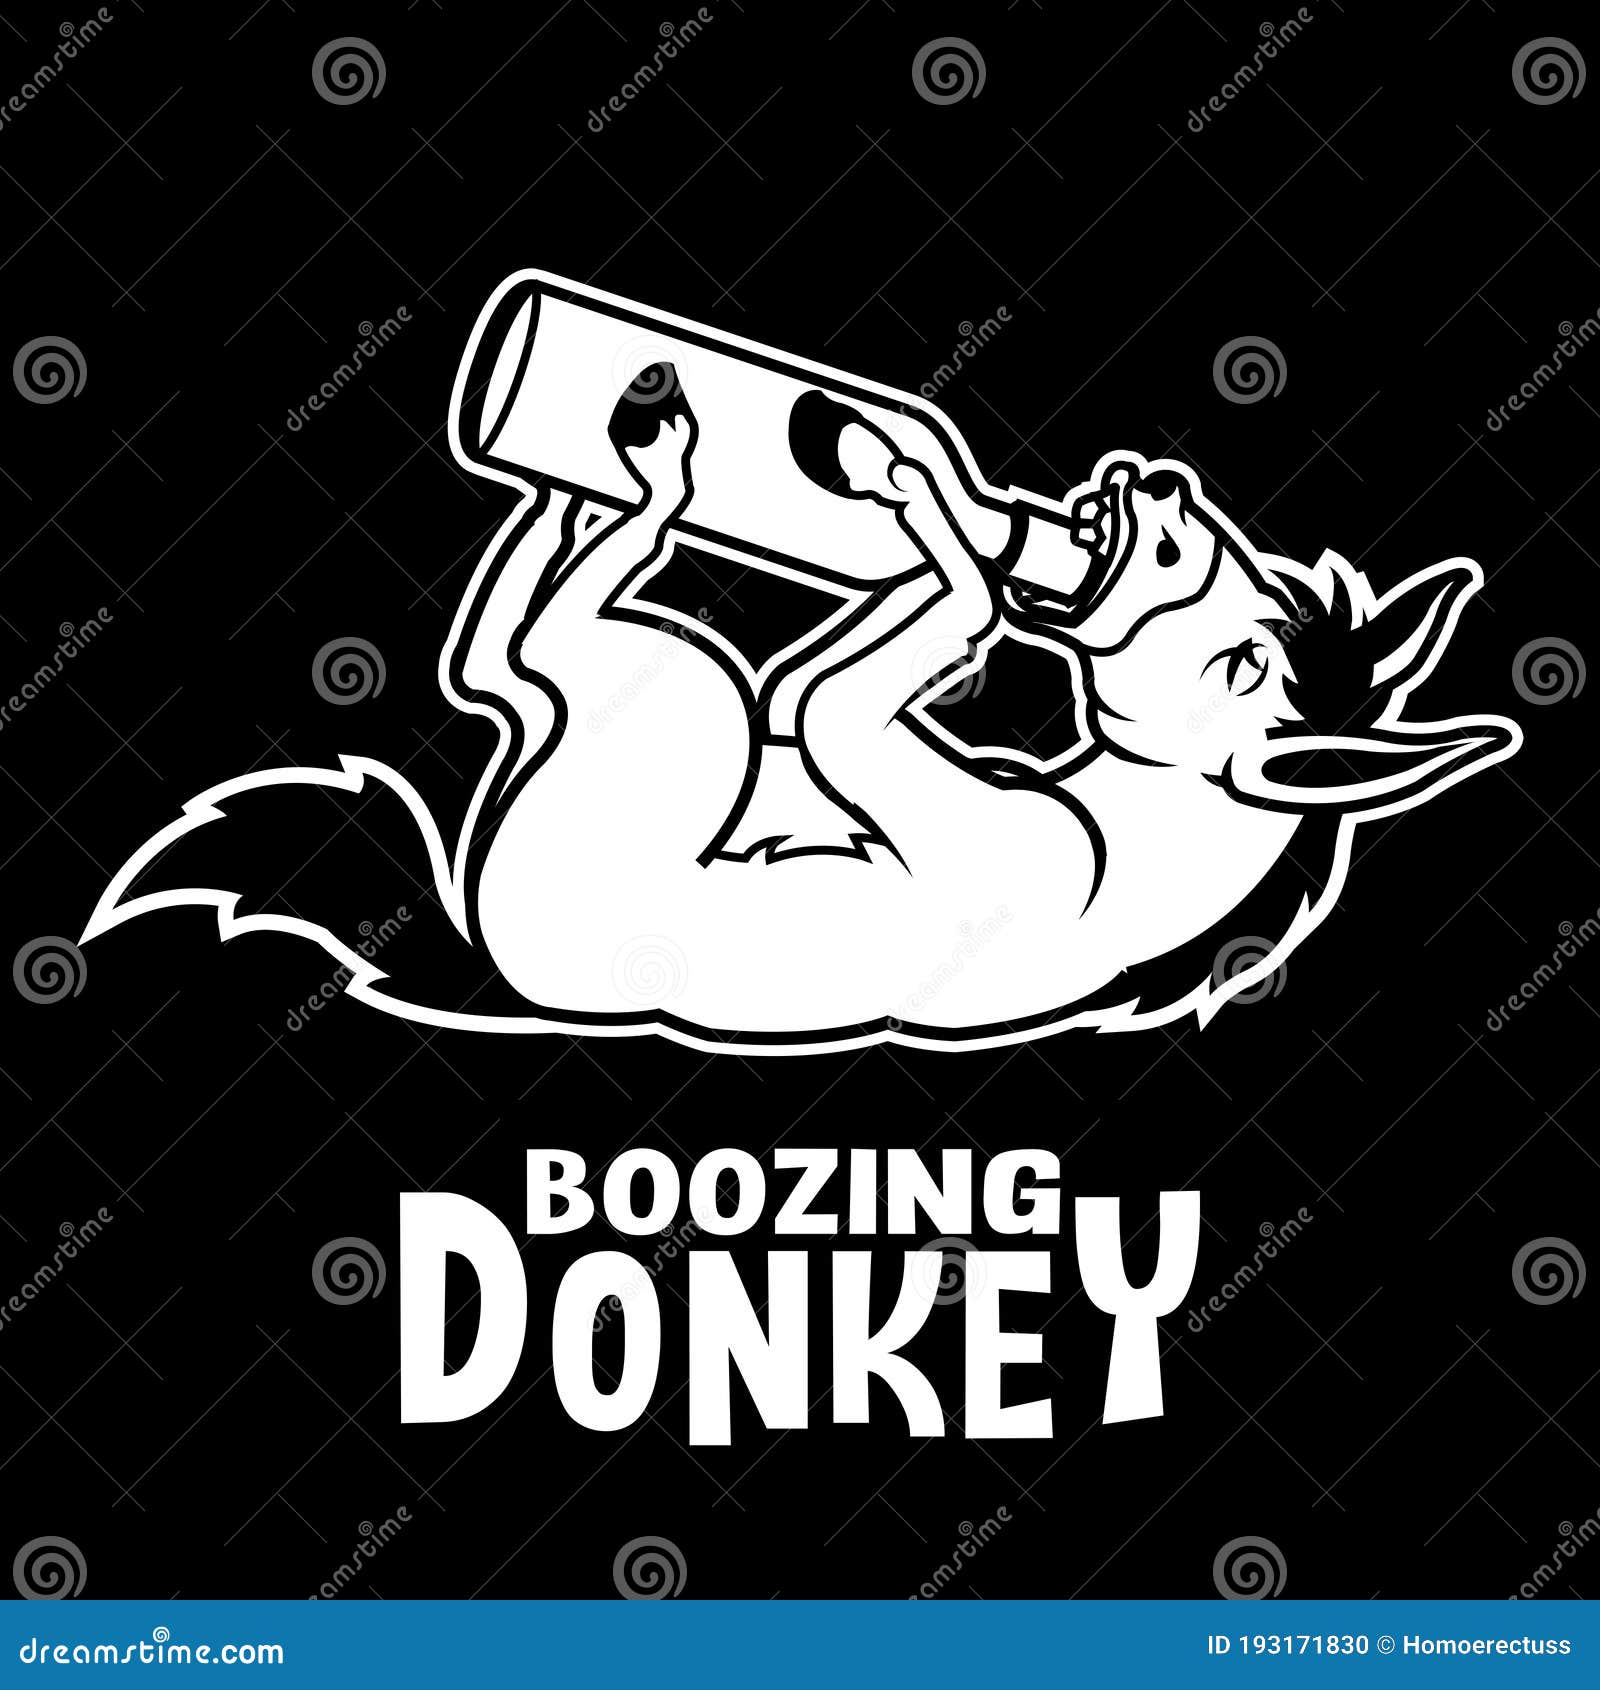 drunken donkey drinking bottle of wine